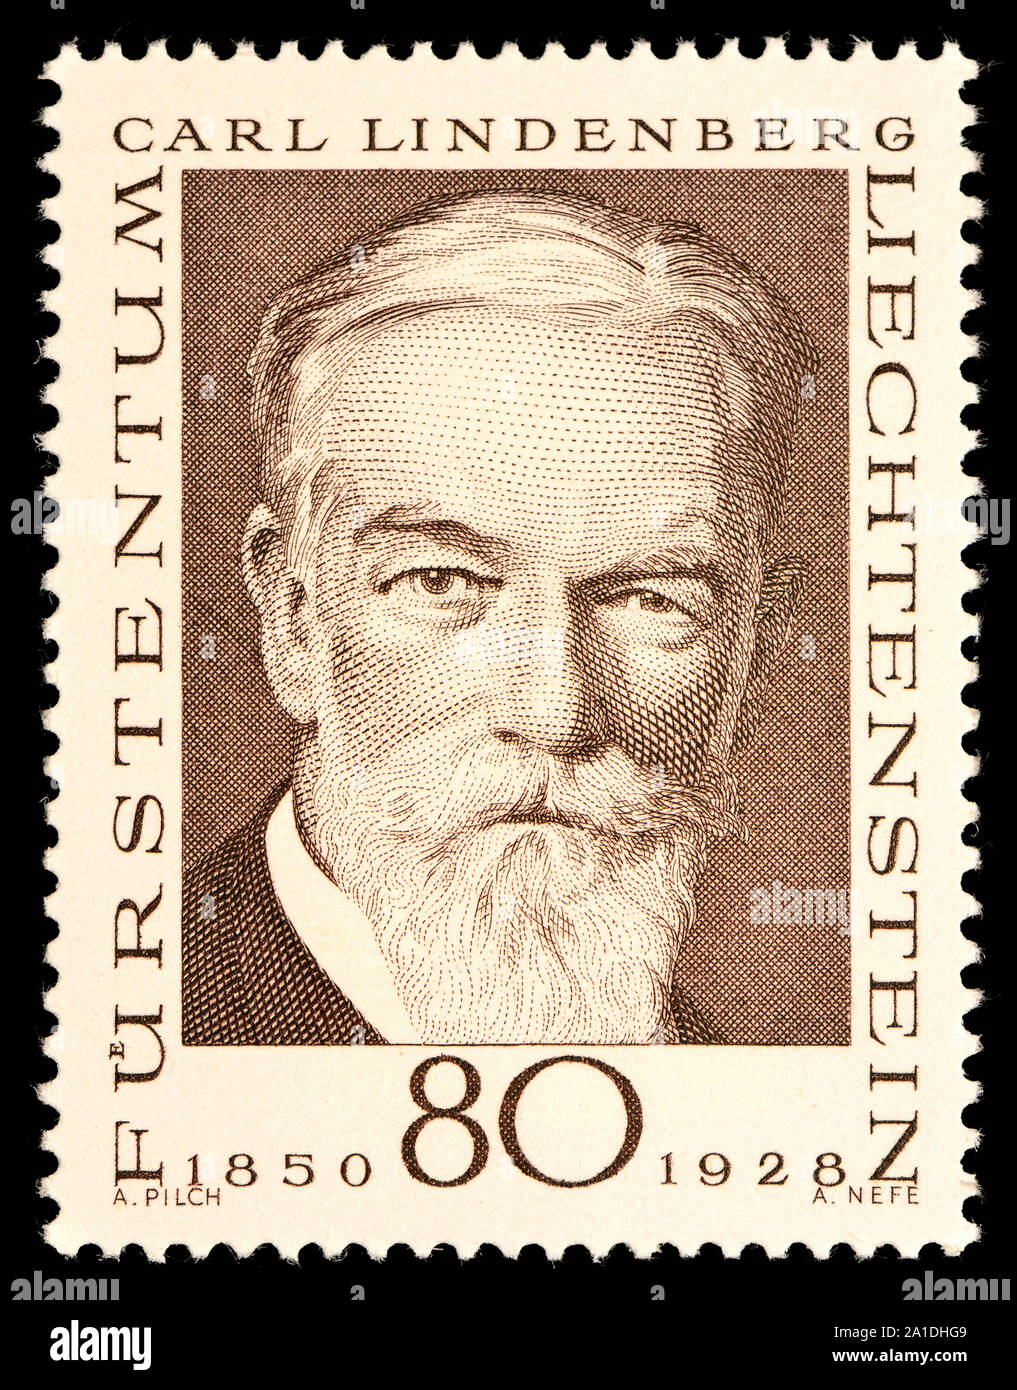 Liechtenstein postage stamp (19): Carl Lindenberg (1850-1928) German lawyer and philatelist Stock Photo